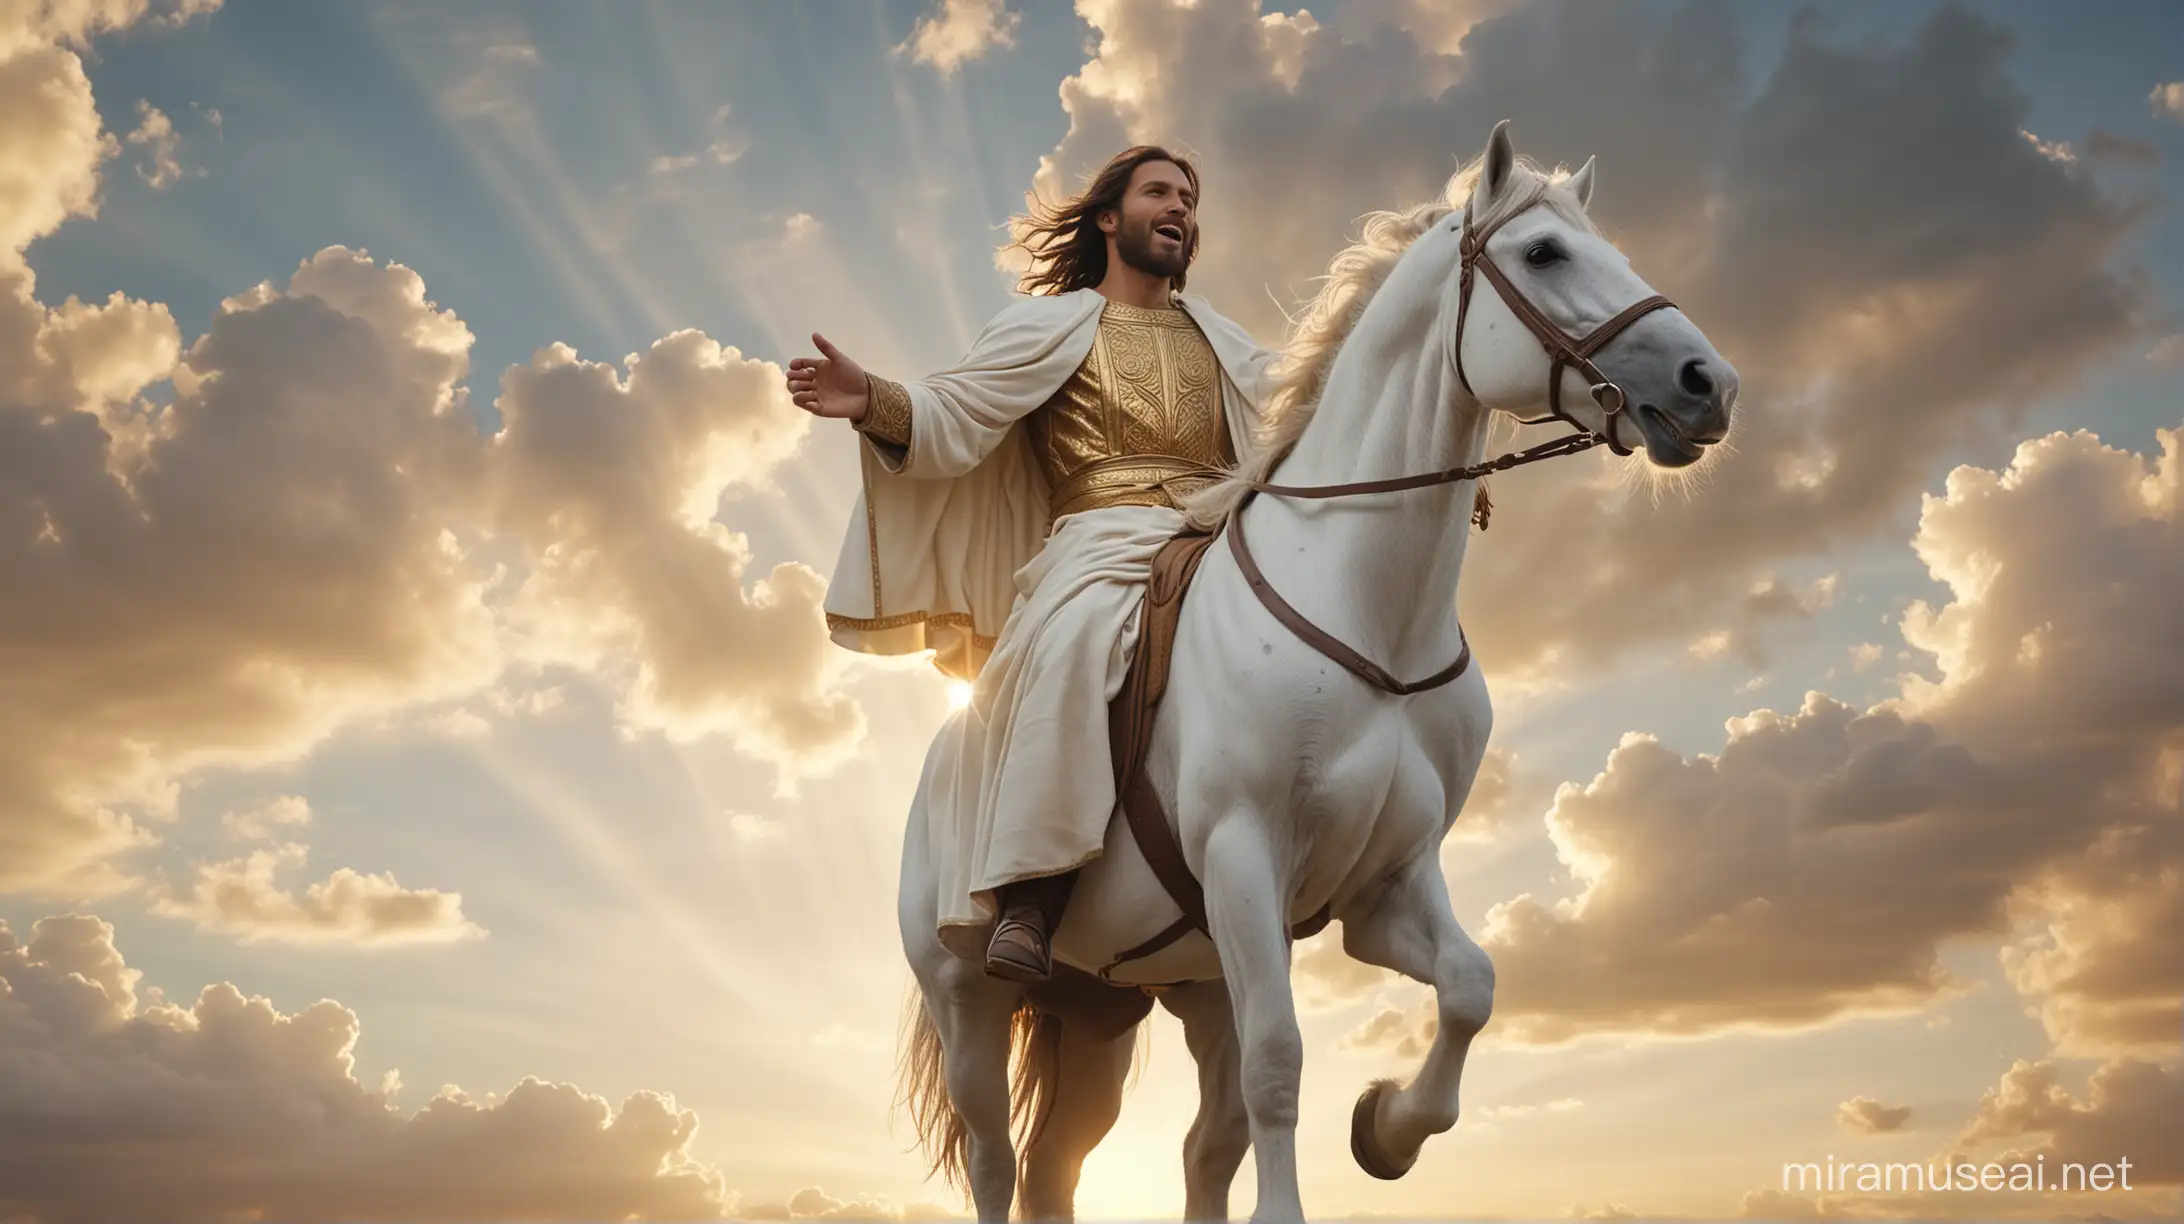 Vibrant Sunset Jesus Descending on White Horse